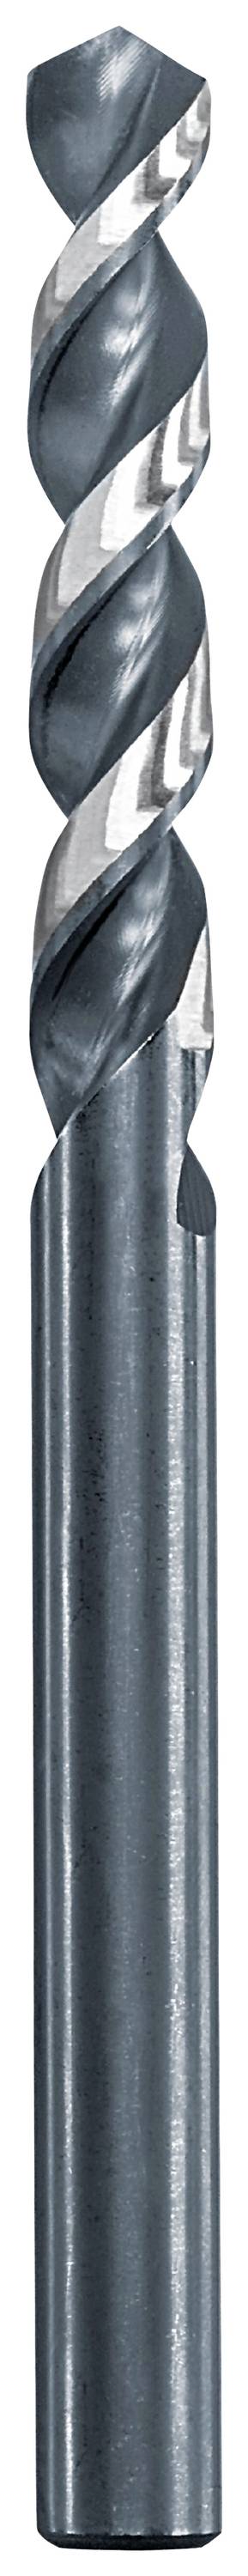 KWB 258660 Metall-Spiralbohrer 6 mm Gesamtlänge 93 mm 1 St.